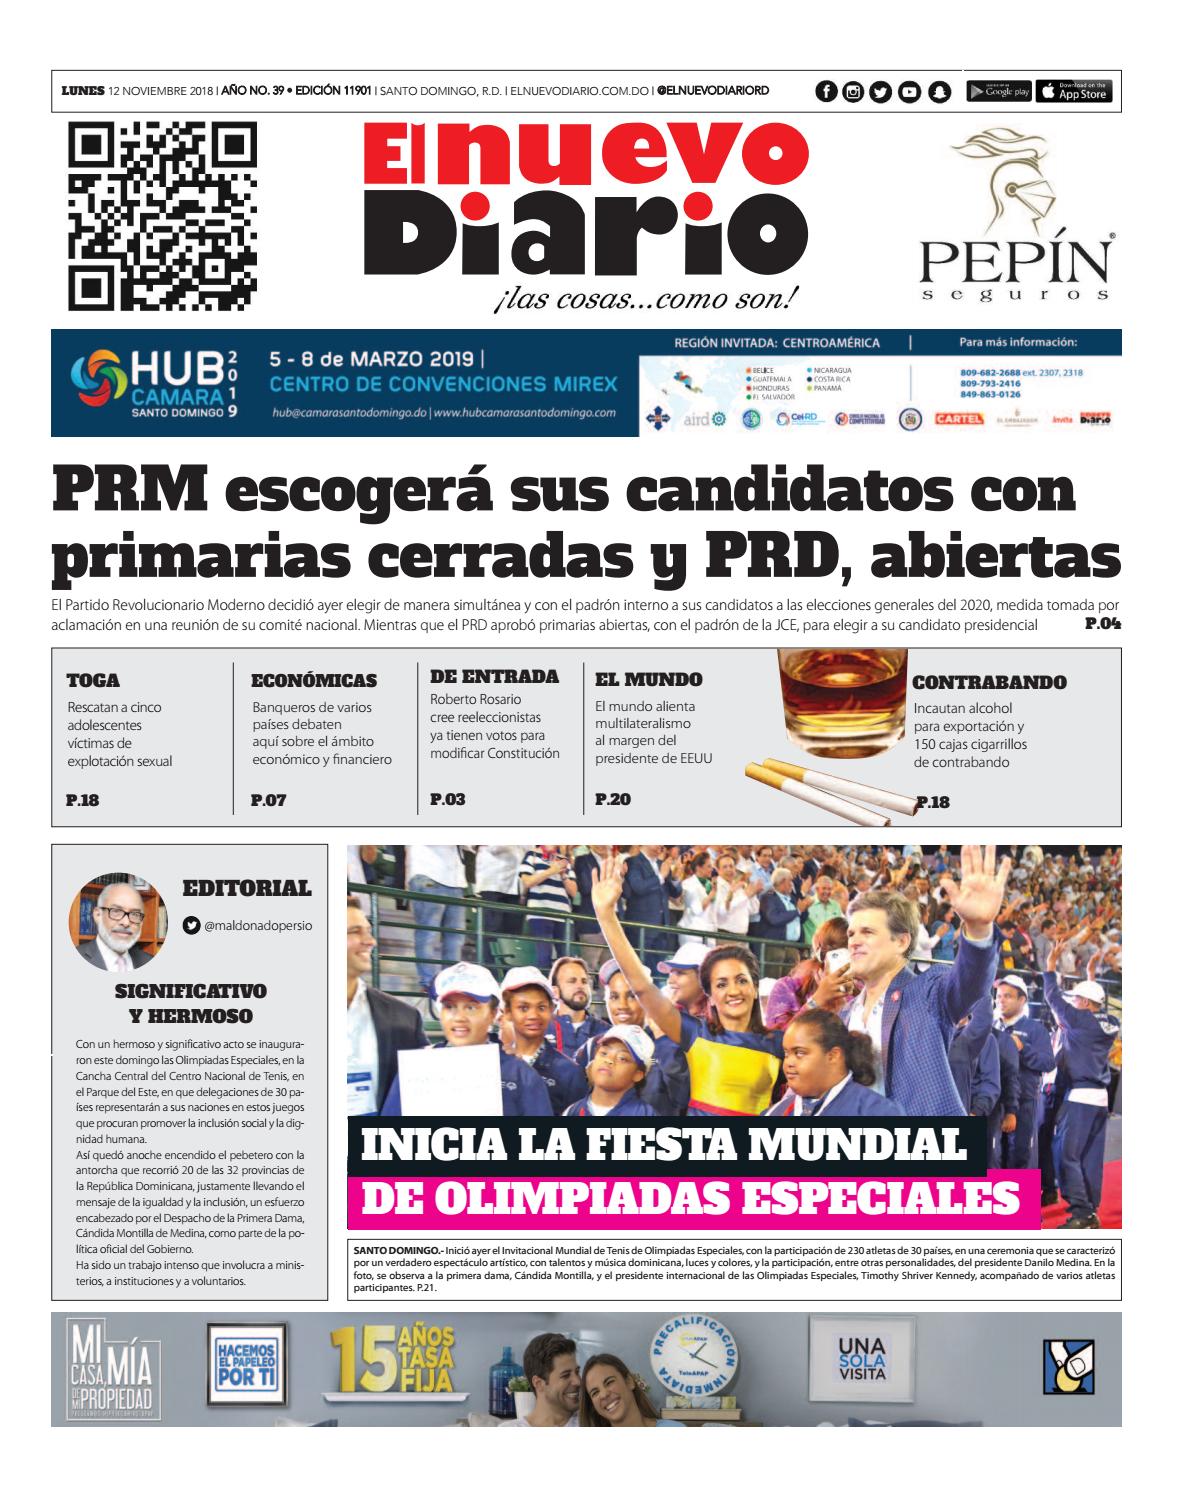 Portada Periódico El Nuevo Diario, Lunes 12 de Noviembre 2018